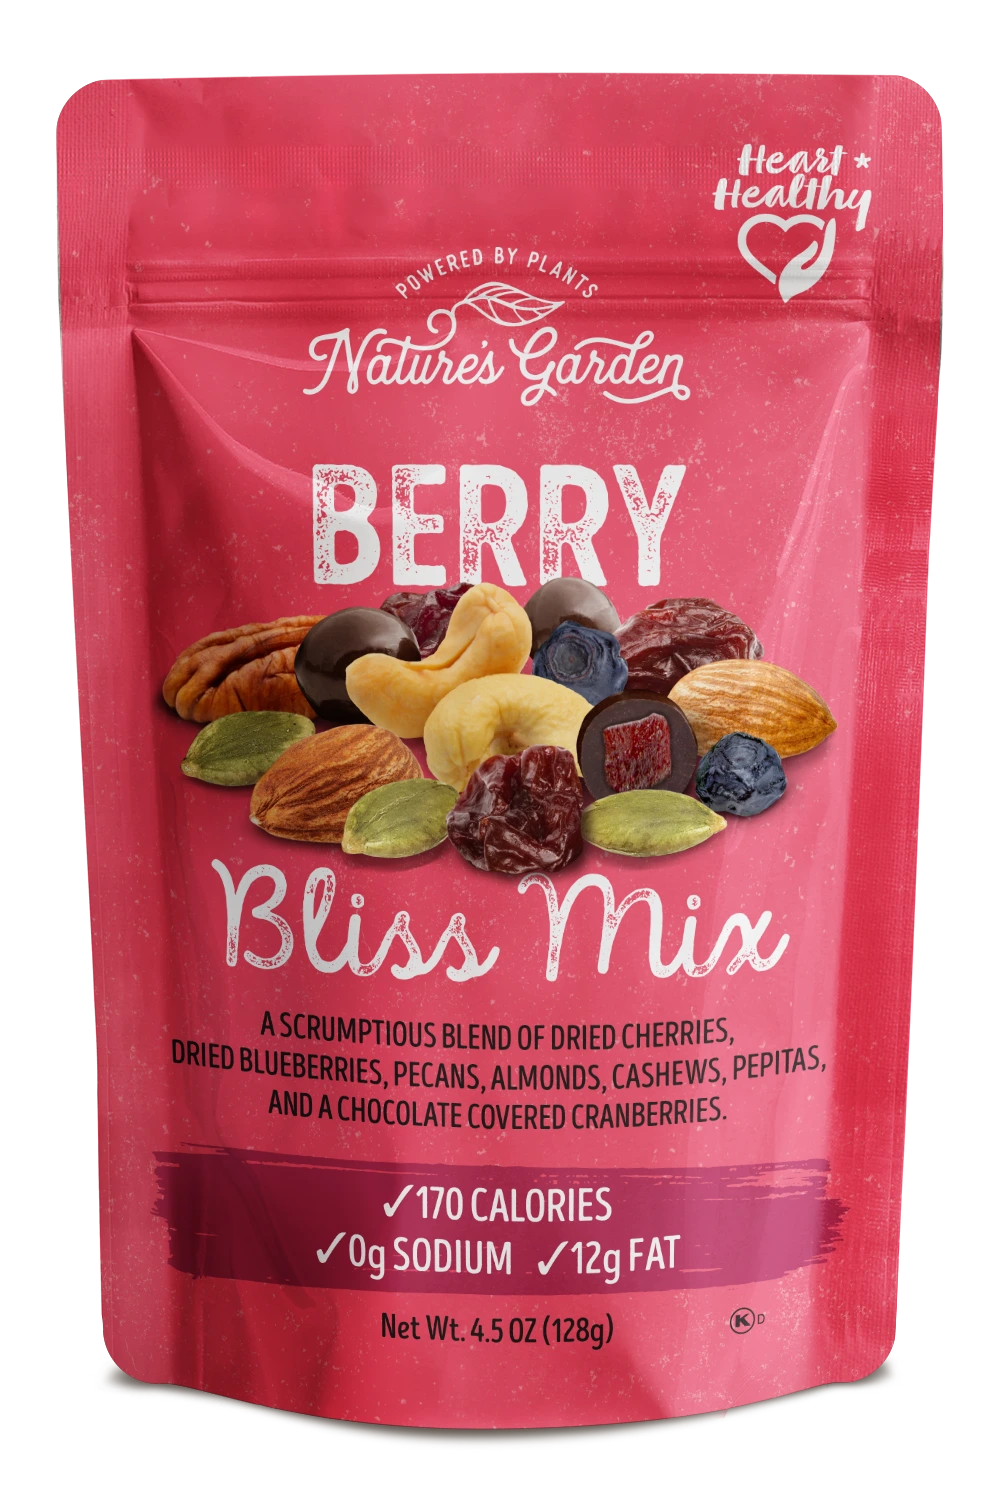 Nature's Garden Berry Bliss Mix